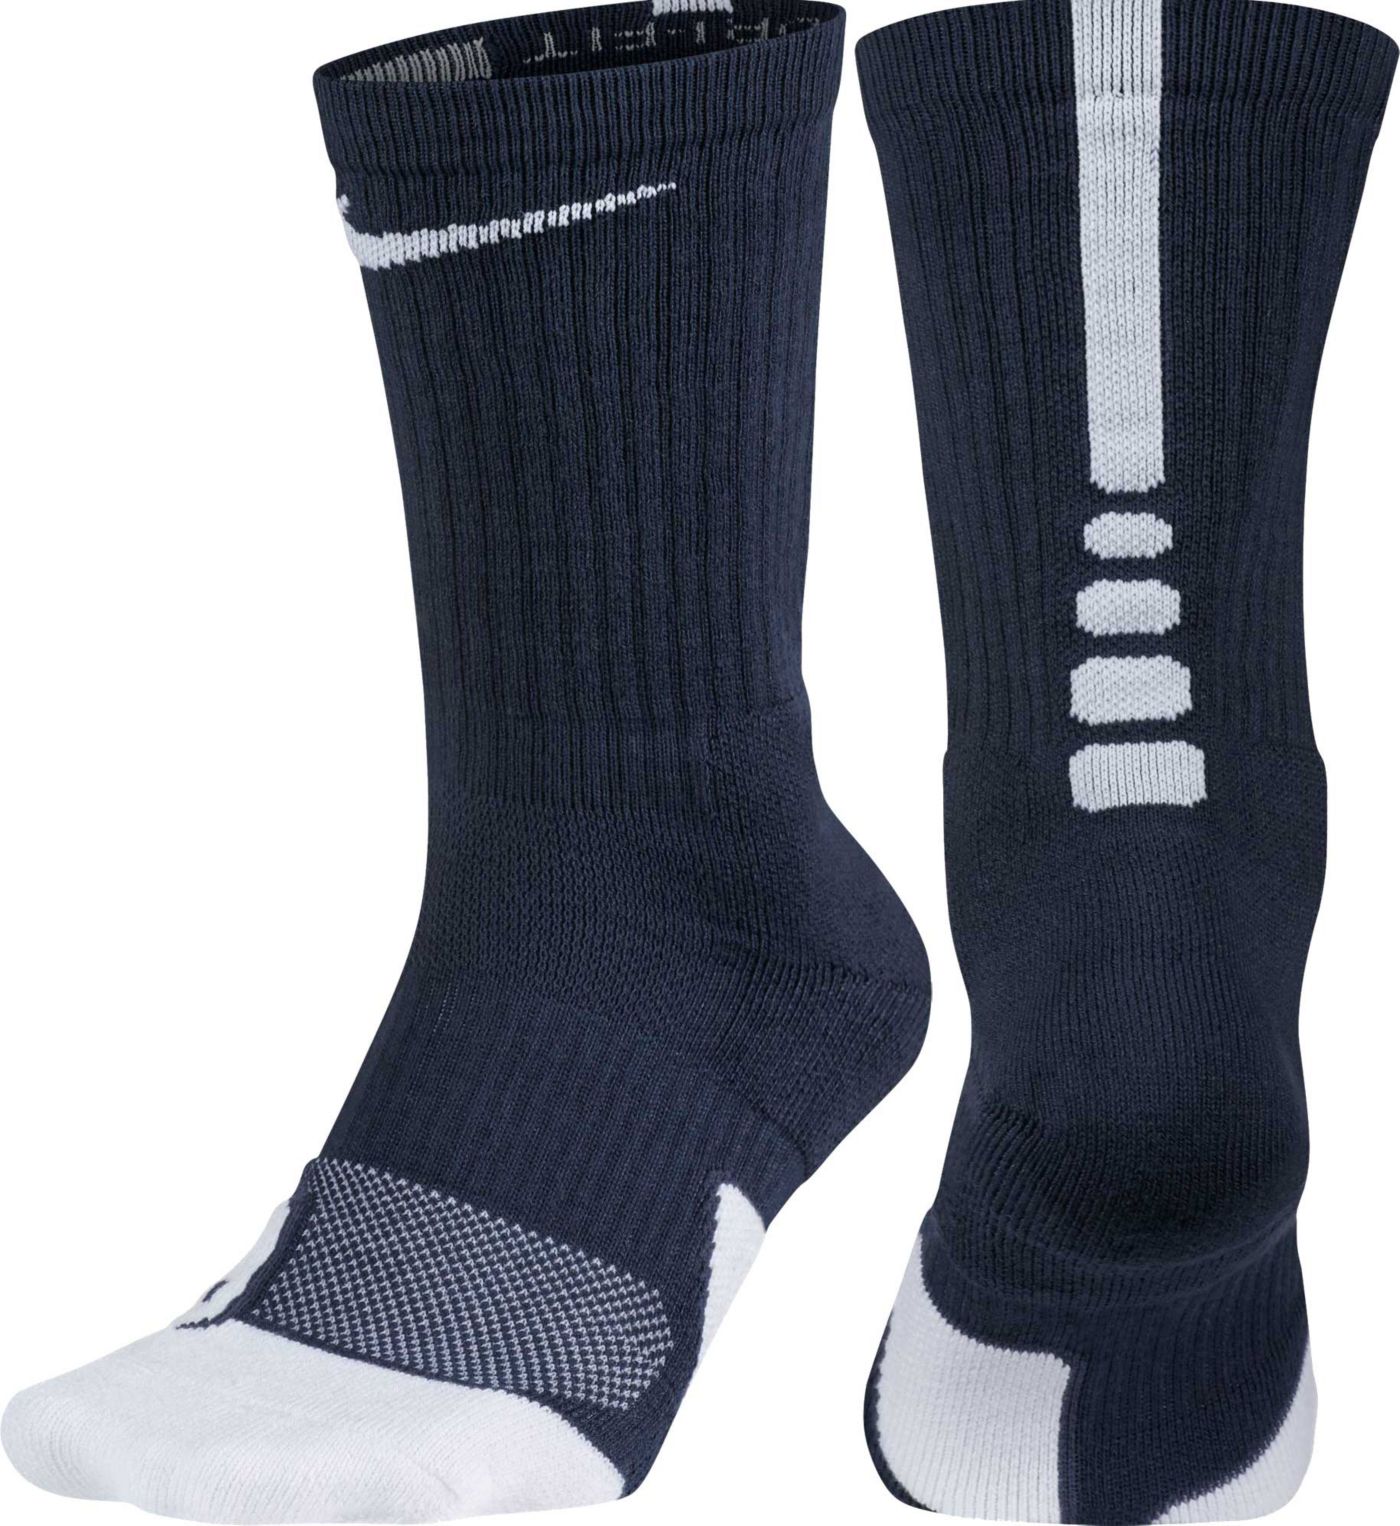 Nike Dry Elite 1.5 Crew Basketball Socks | DICK'S Sporting Goods